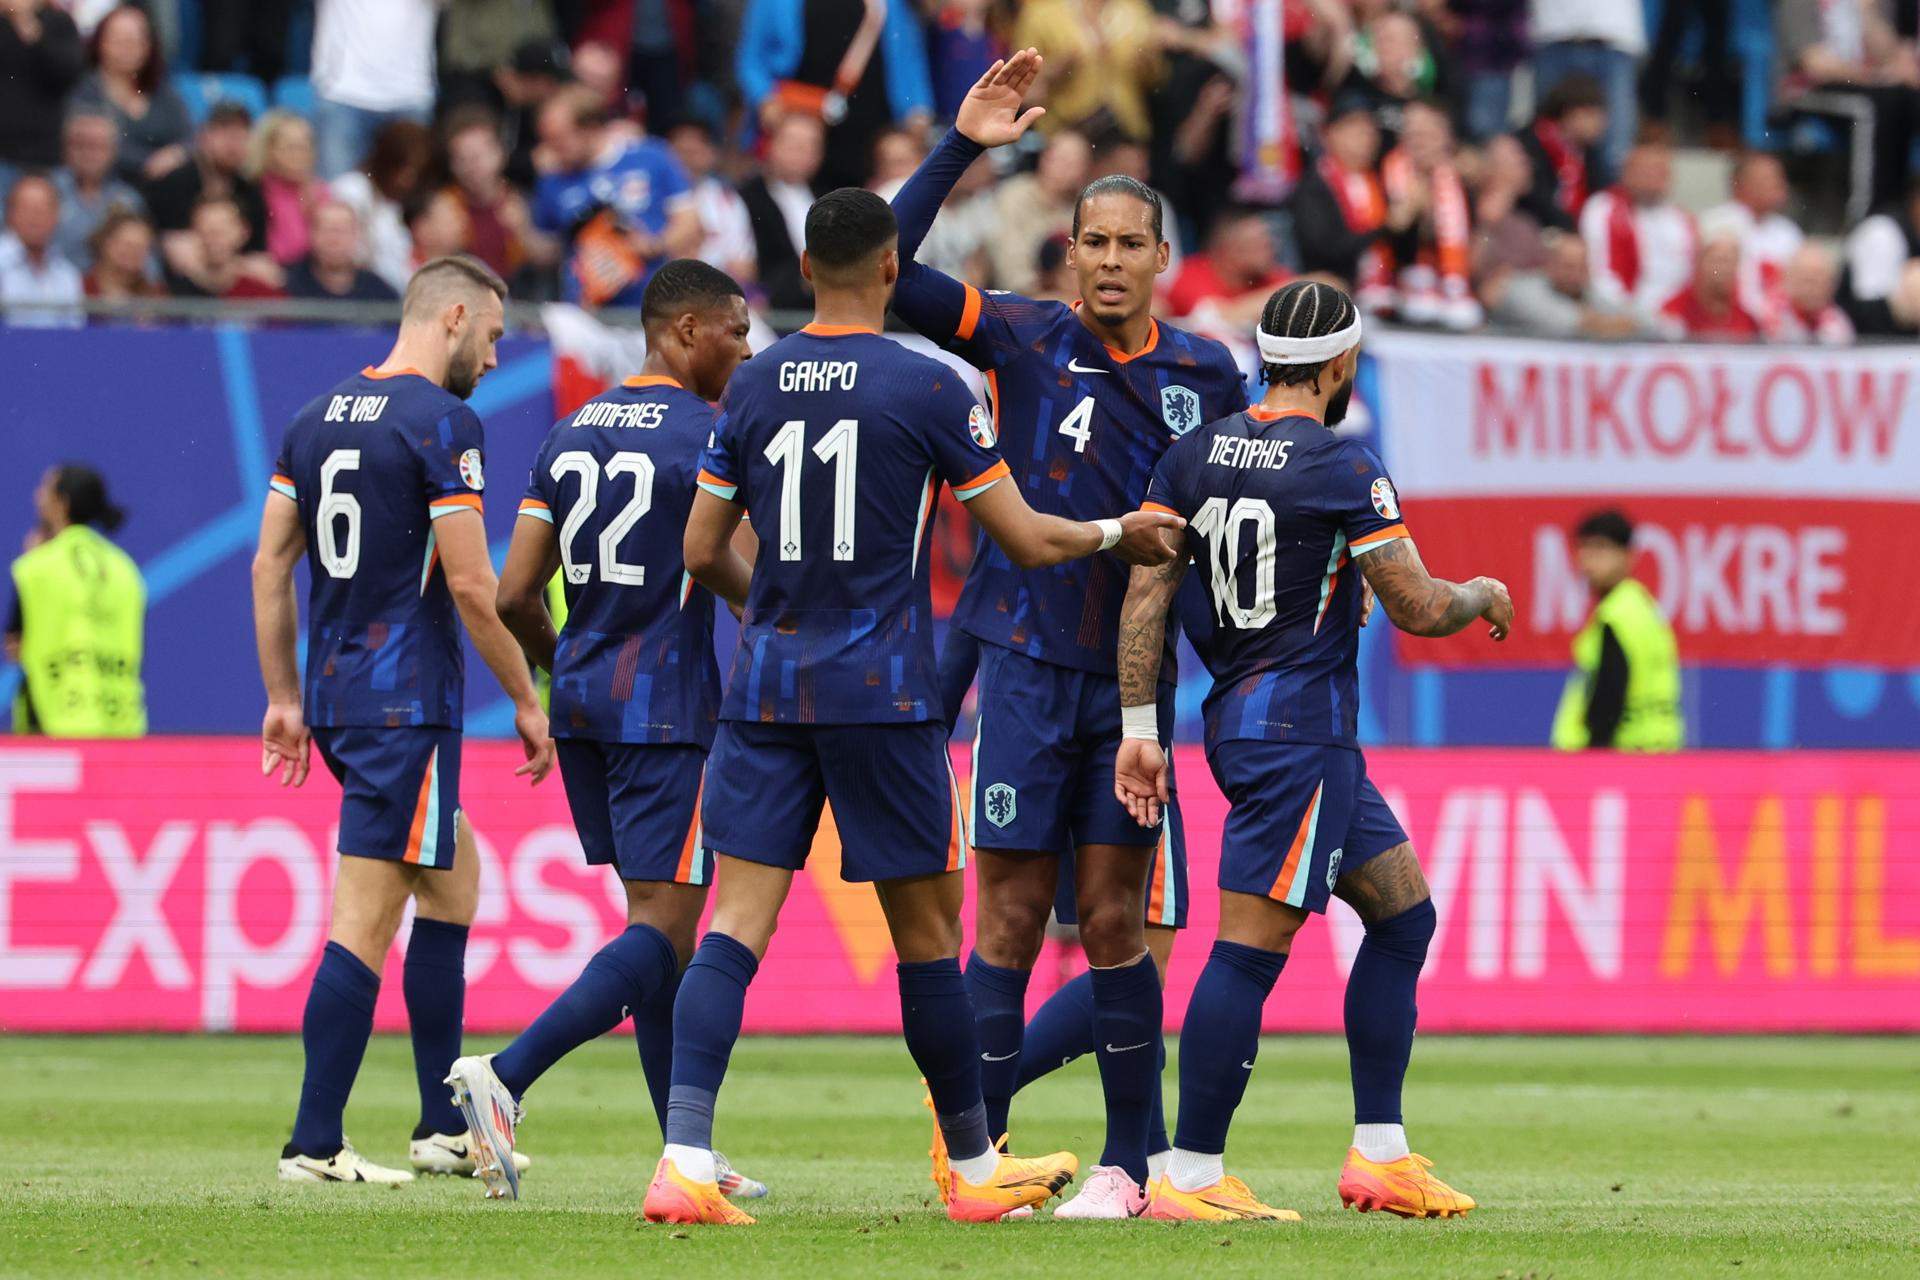 Países Bajos salva los muebles ante una combativa Polonia en su primer partido de la Eurocopa (1-2)